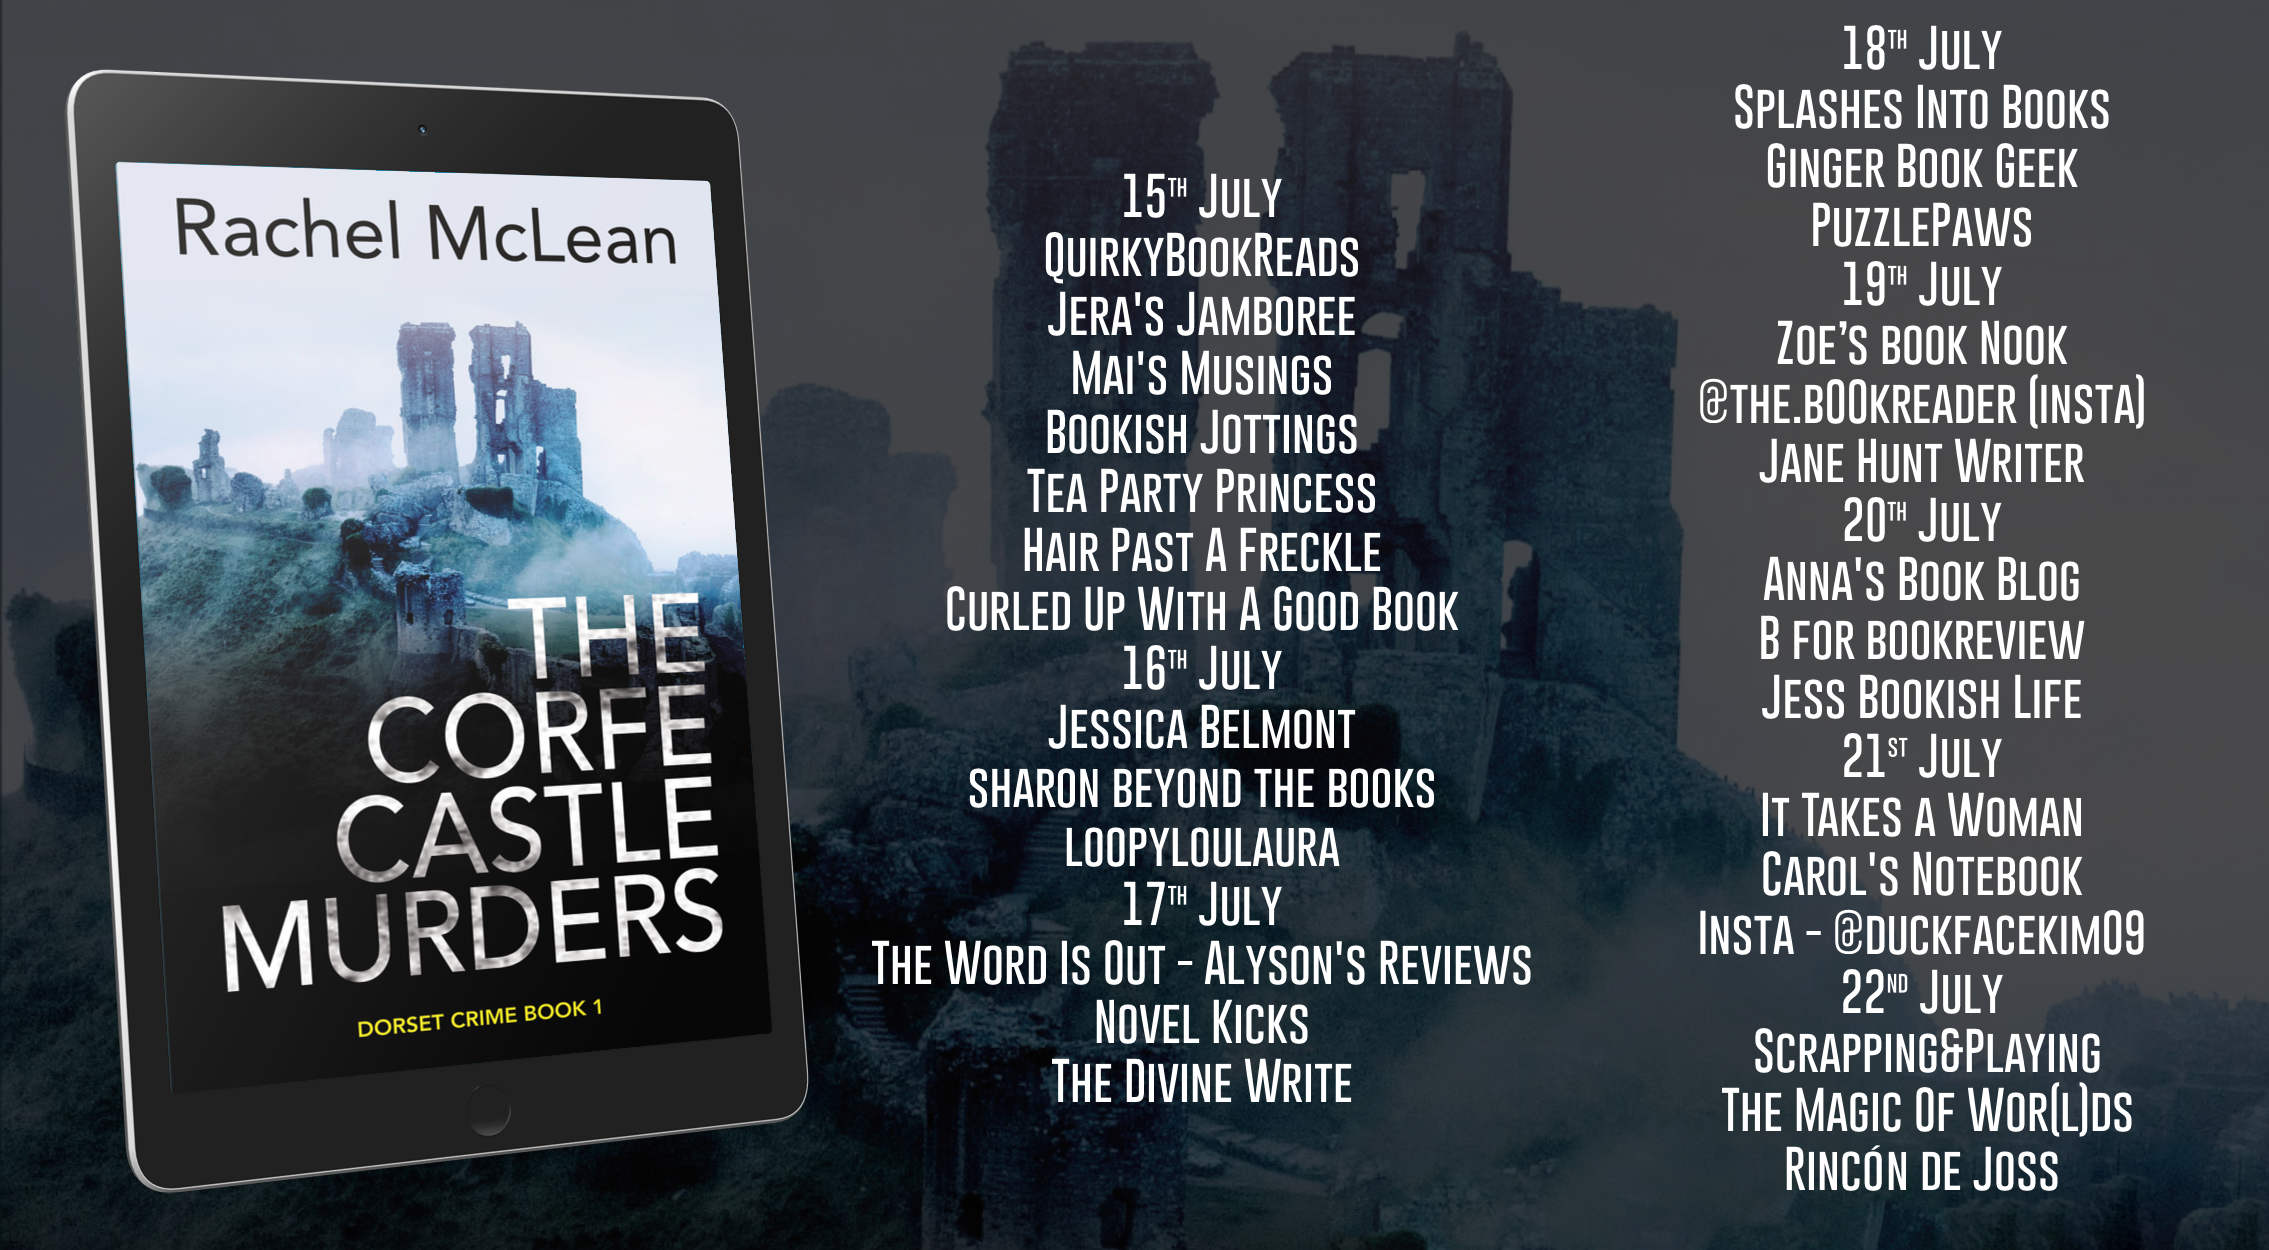 The Corfe Castle Murders by Rachel McLean